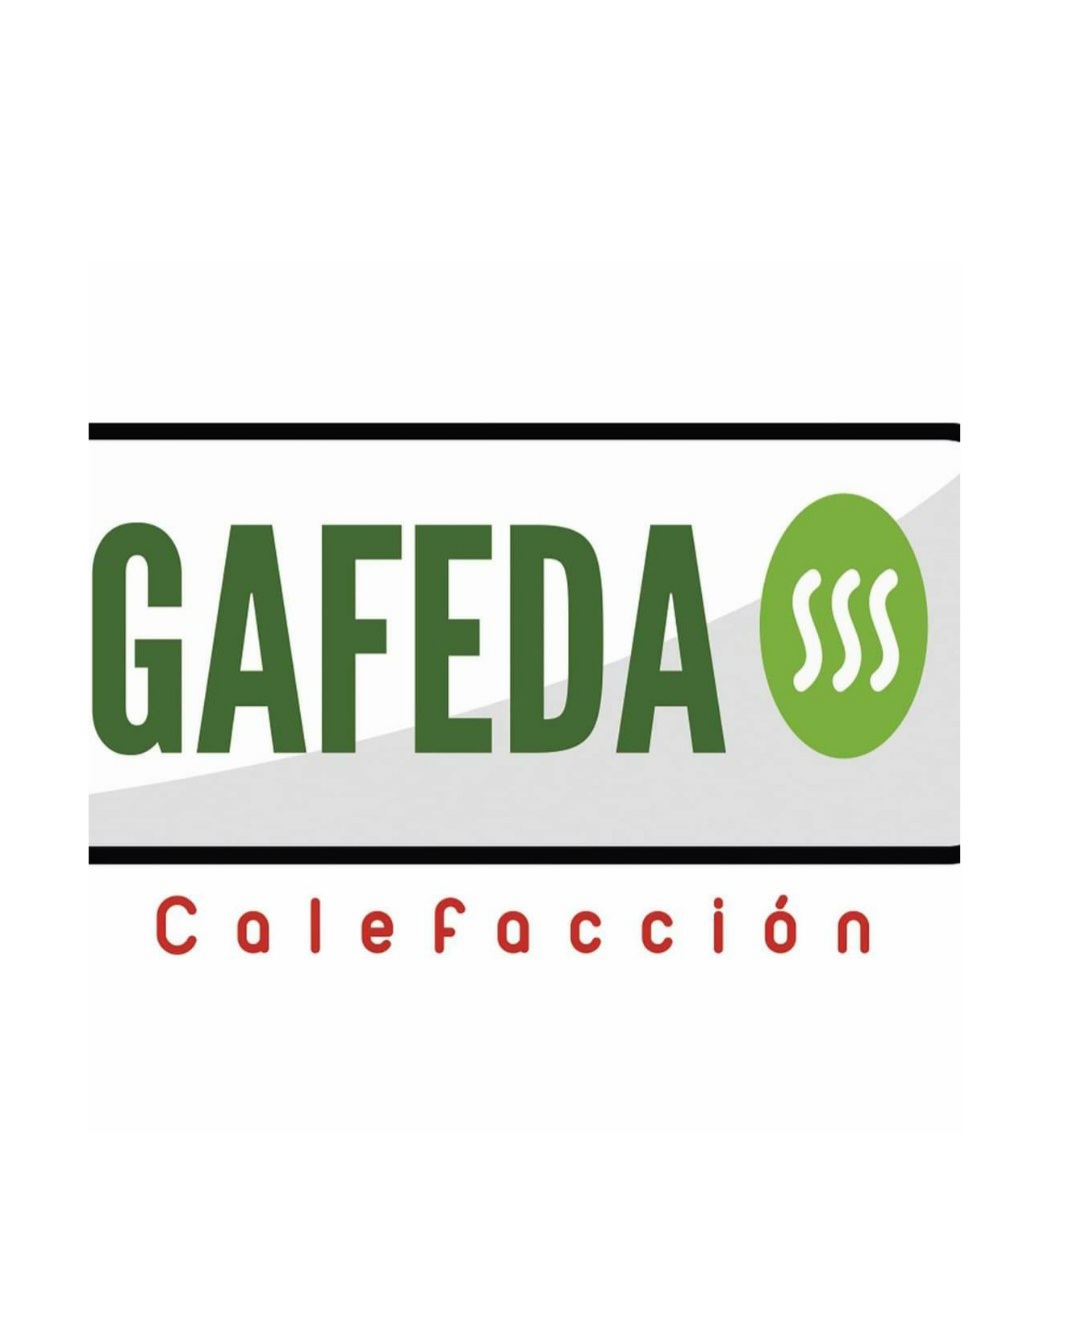 Gafeda